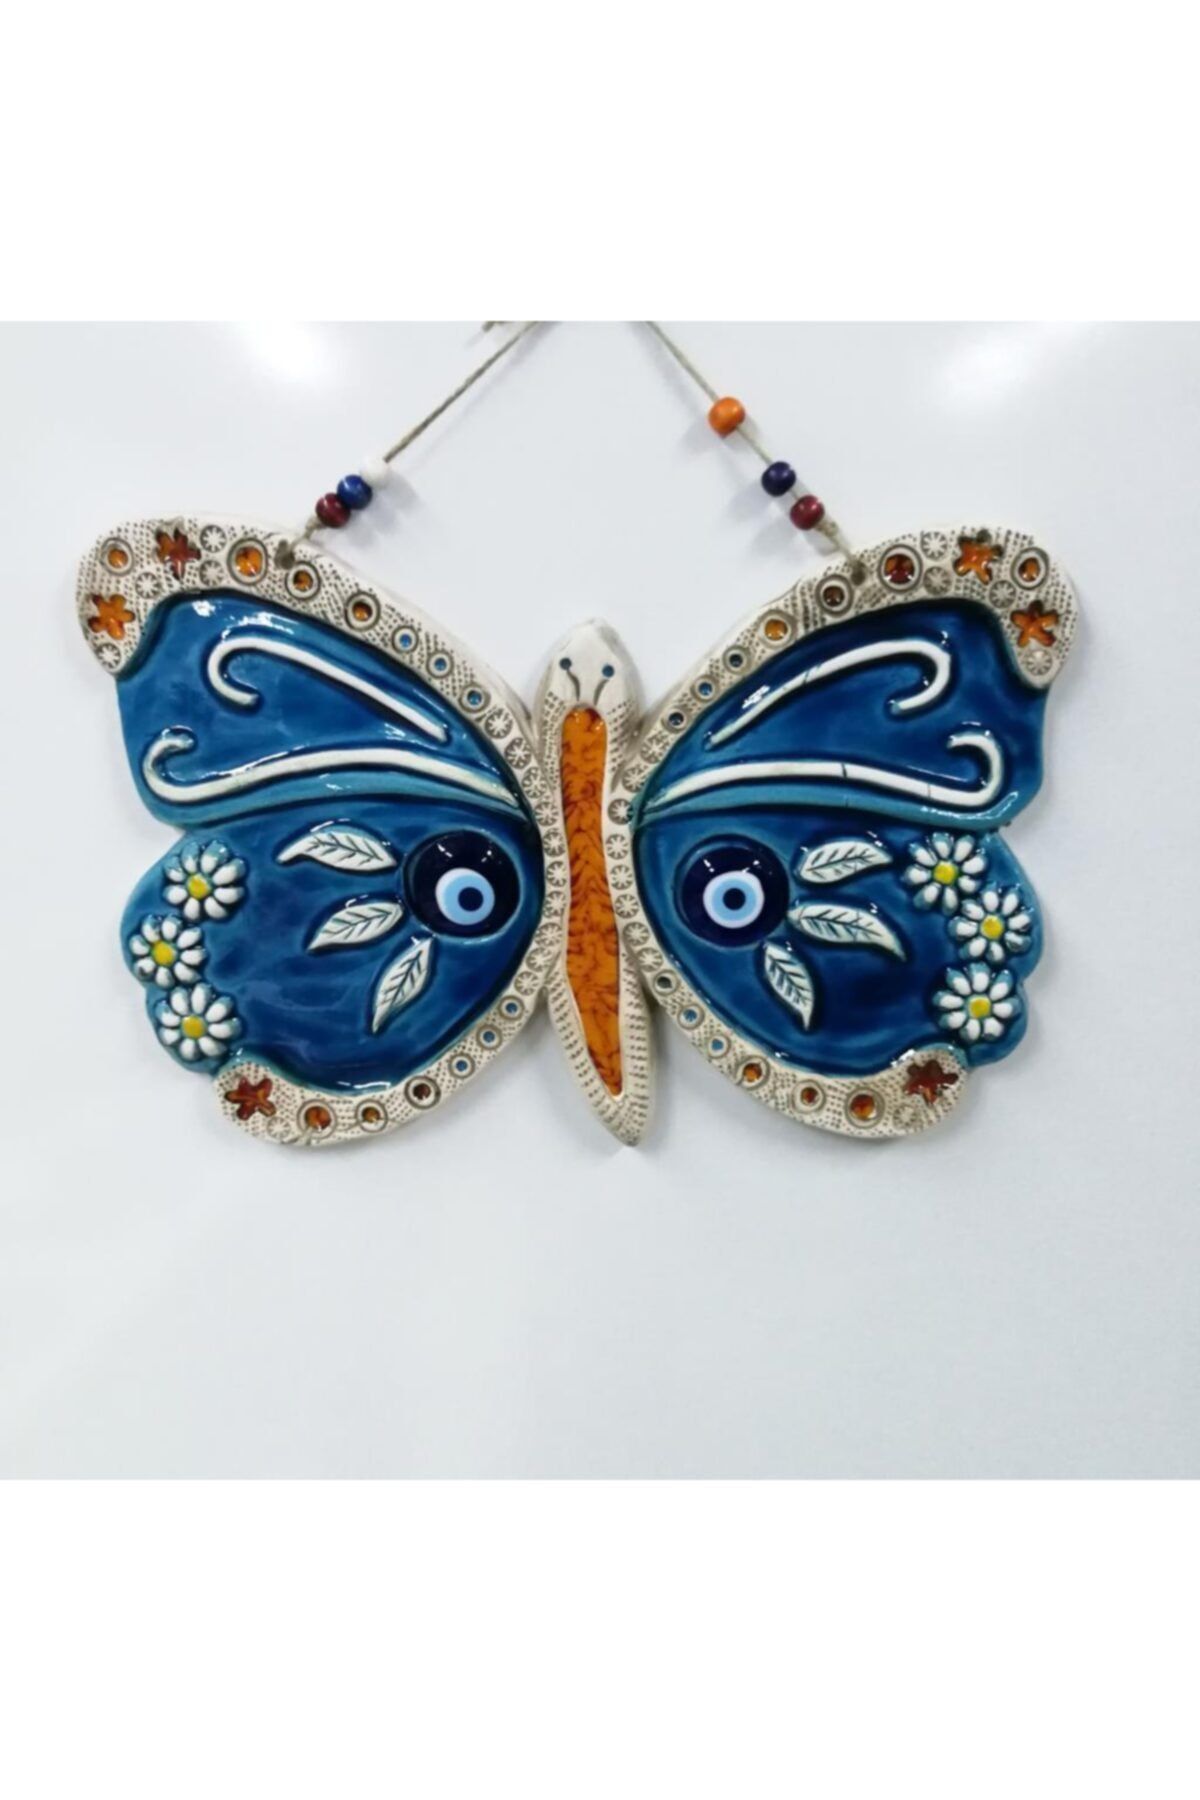 SUME Seramik Kelebek Dekoratif El Işi Duvar Süsü Büyük Boy Nazarlık